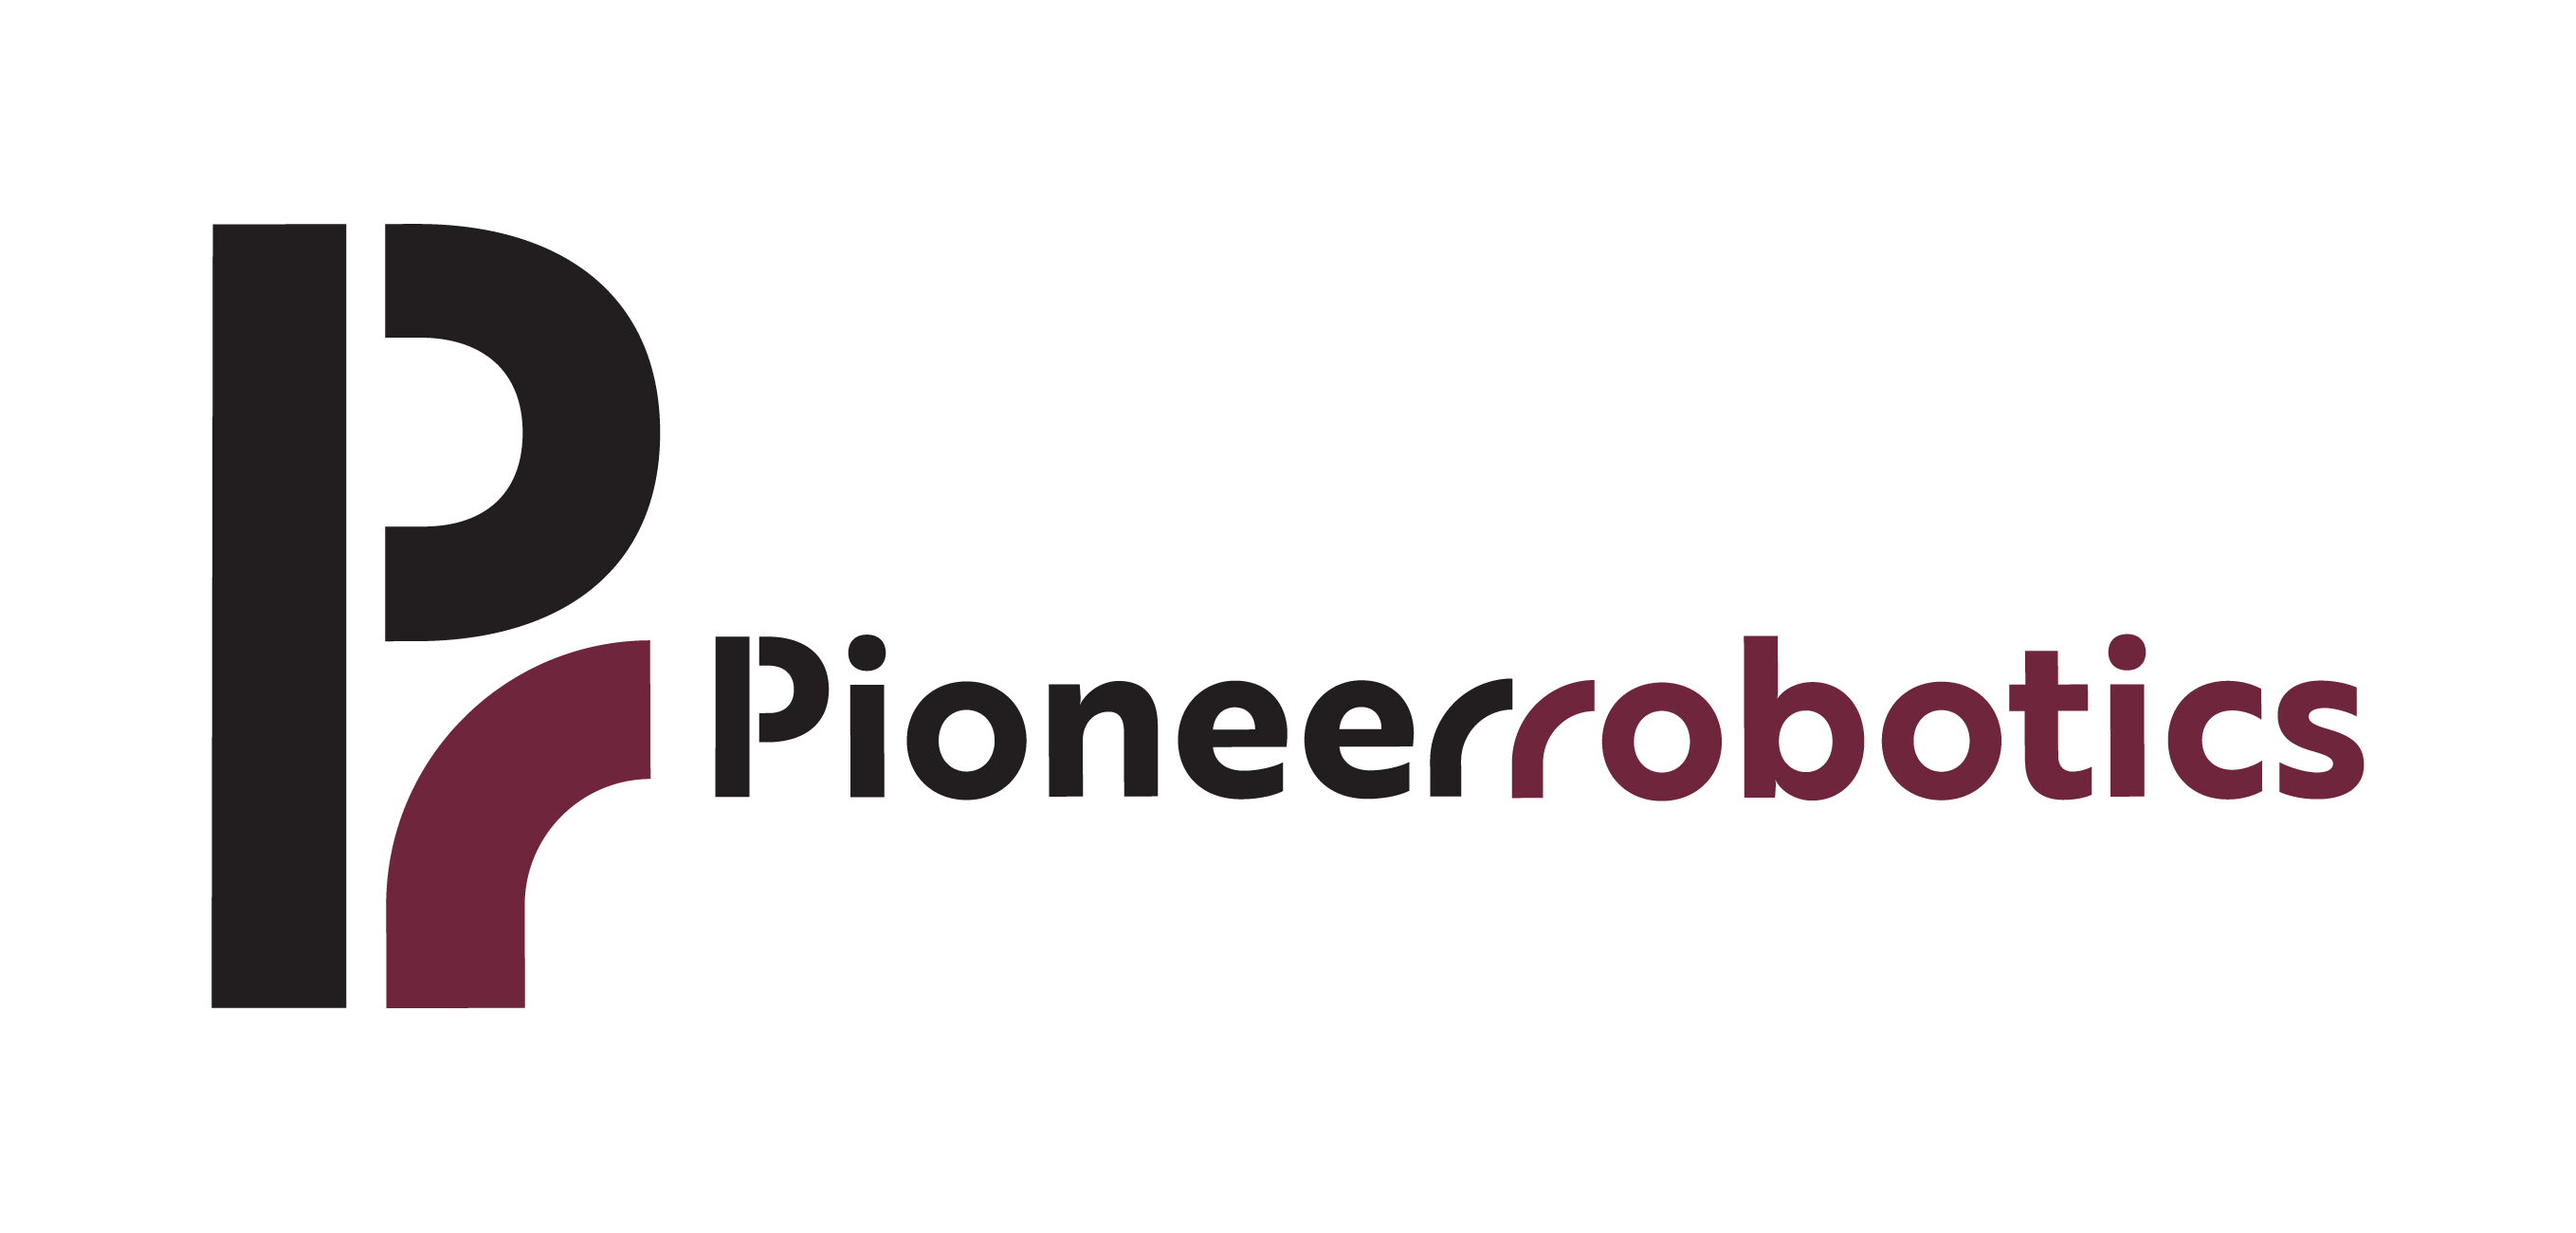 Pioneer Robotics AS - Logo